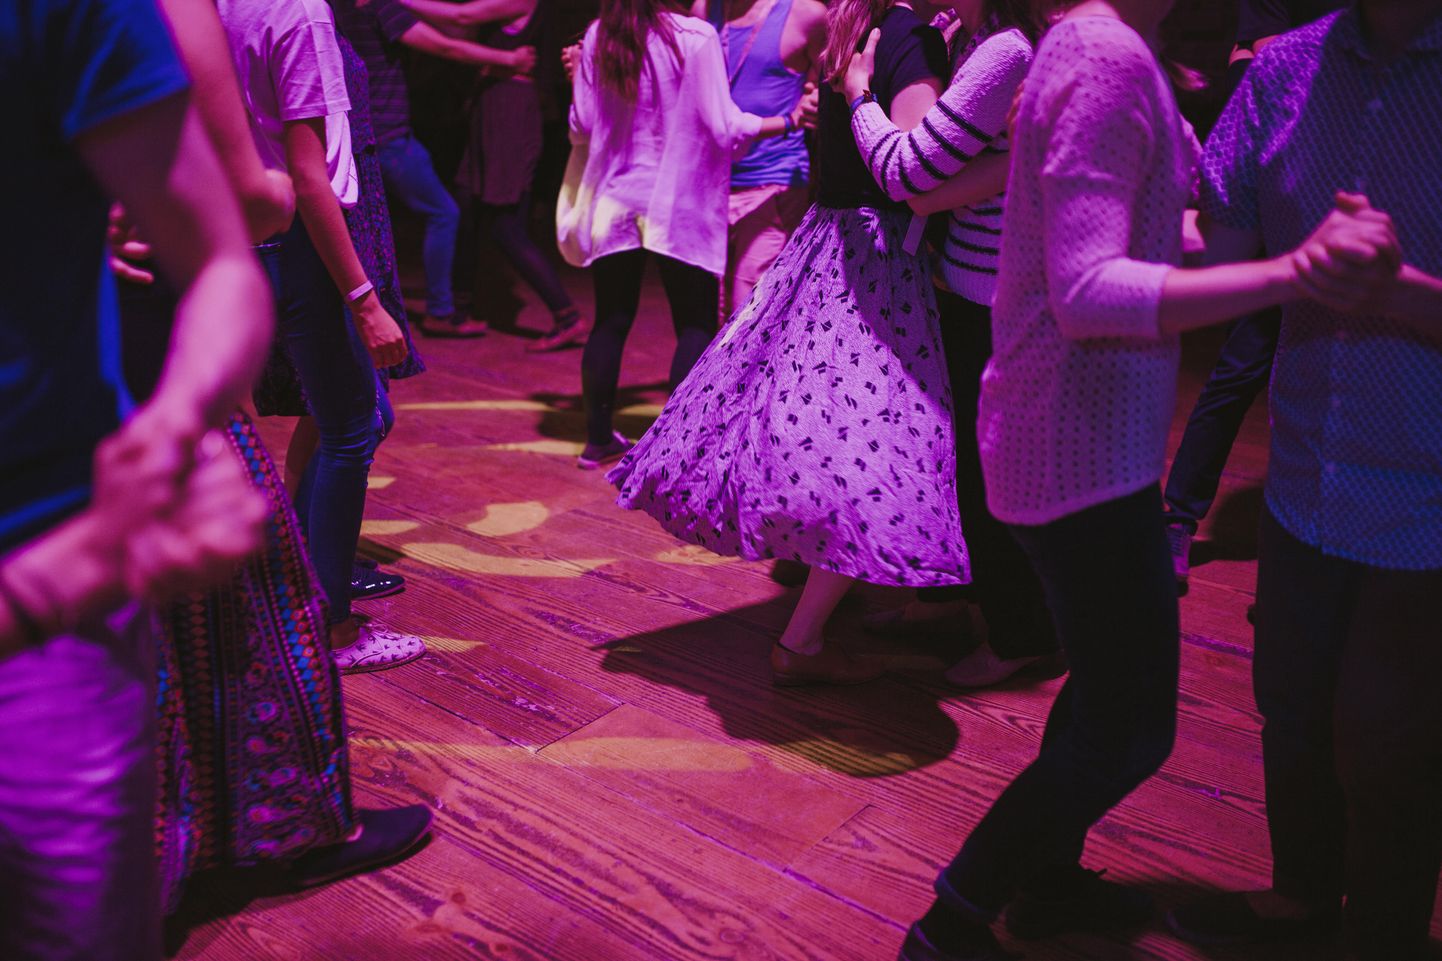 Kadrilaupäeval tantsitakse pärimusmuusika aidas ka pärimuslikke tantse.